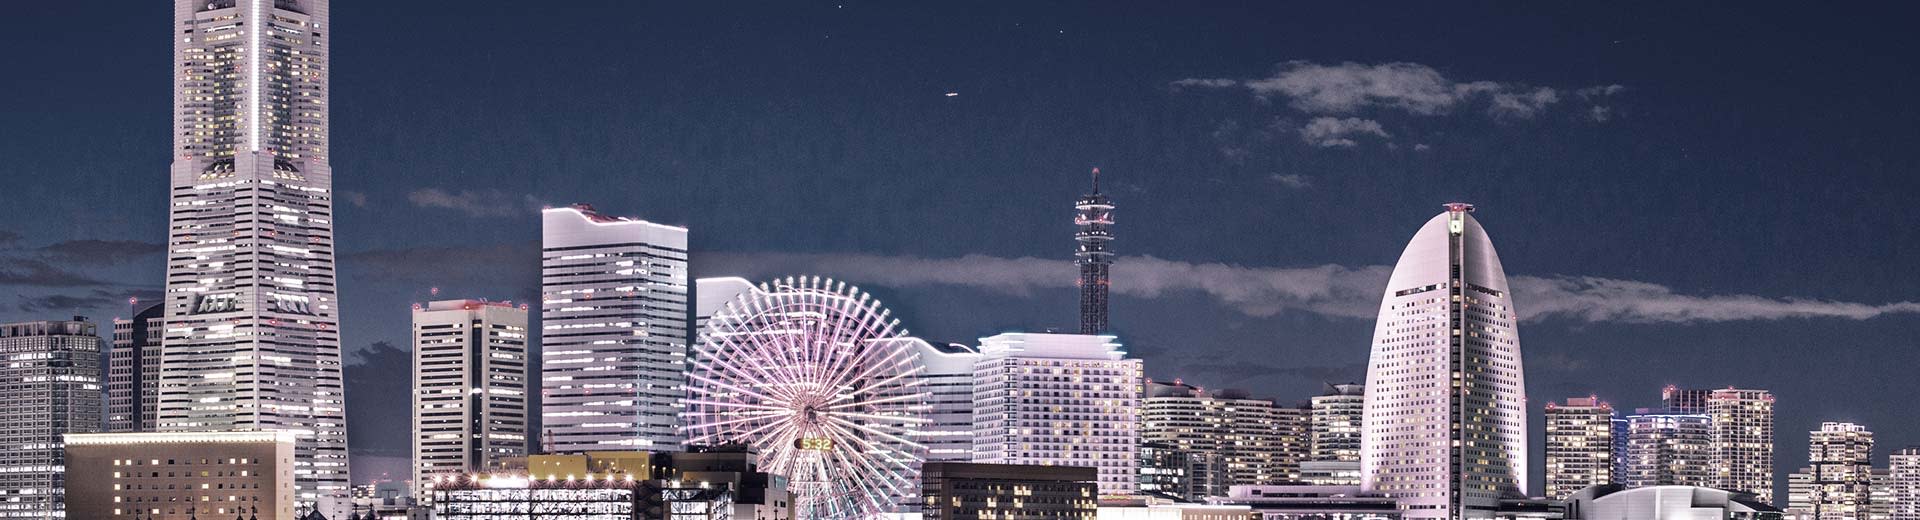 Une rangée de gratte-ciel moderne la nuit à Yokohama illumine l'obscurité, avec une roue Ferris irrévérencieuse au premier plan.